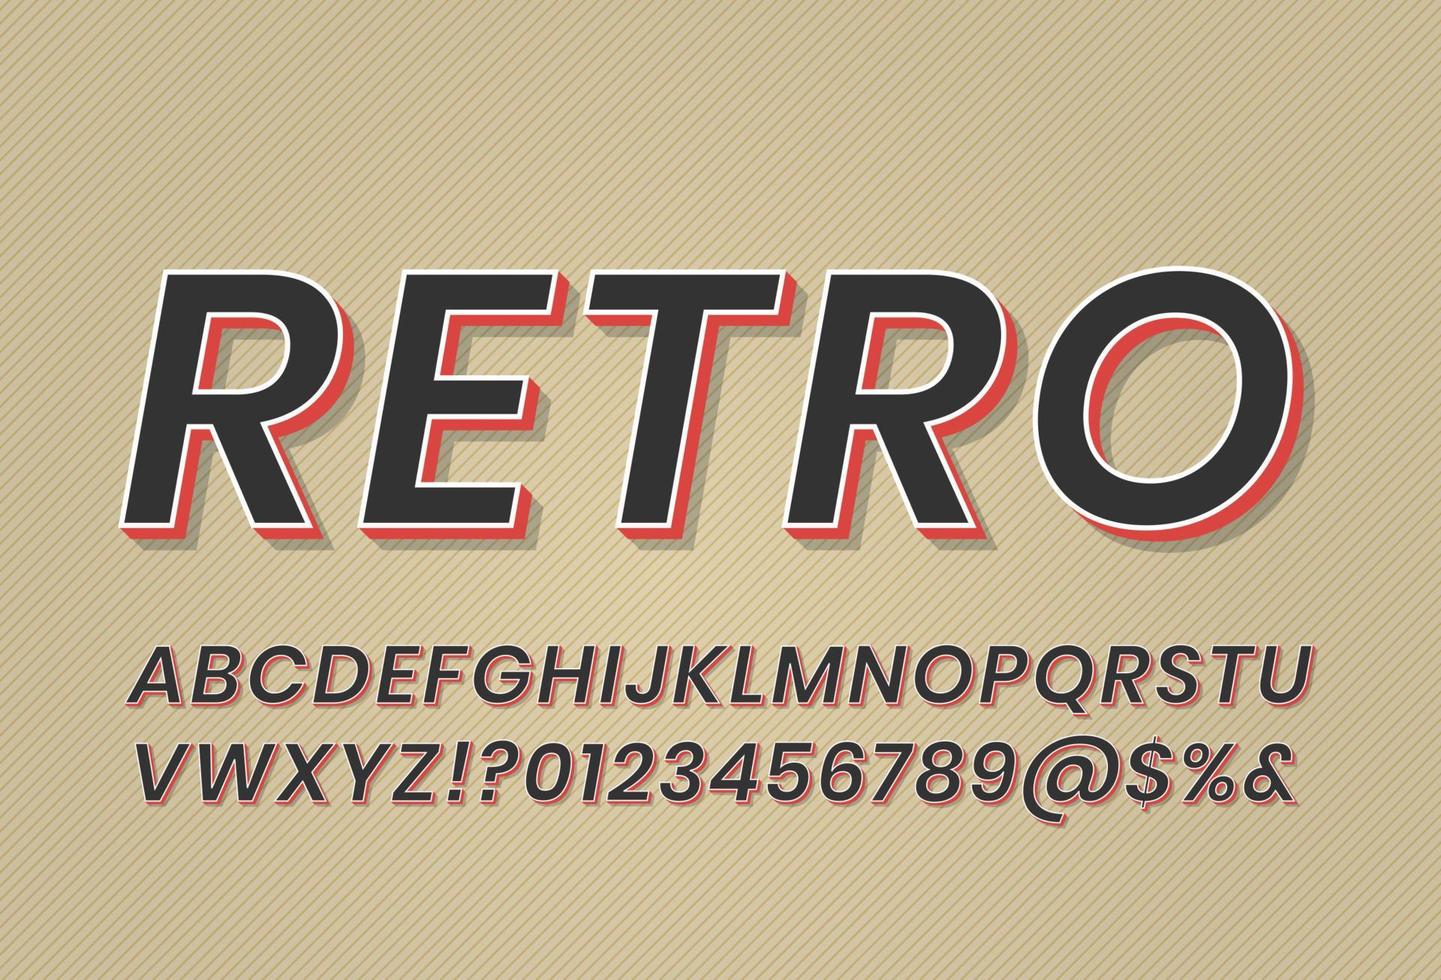 fonte retro vintage com efeito de texto extrudado 3D, logotipo retro antigo vetor